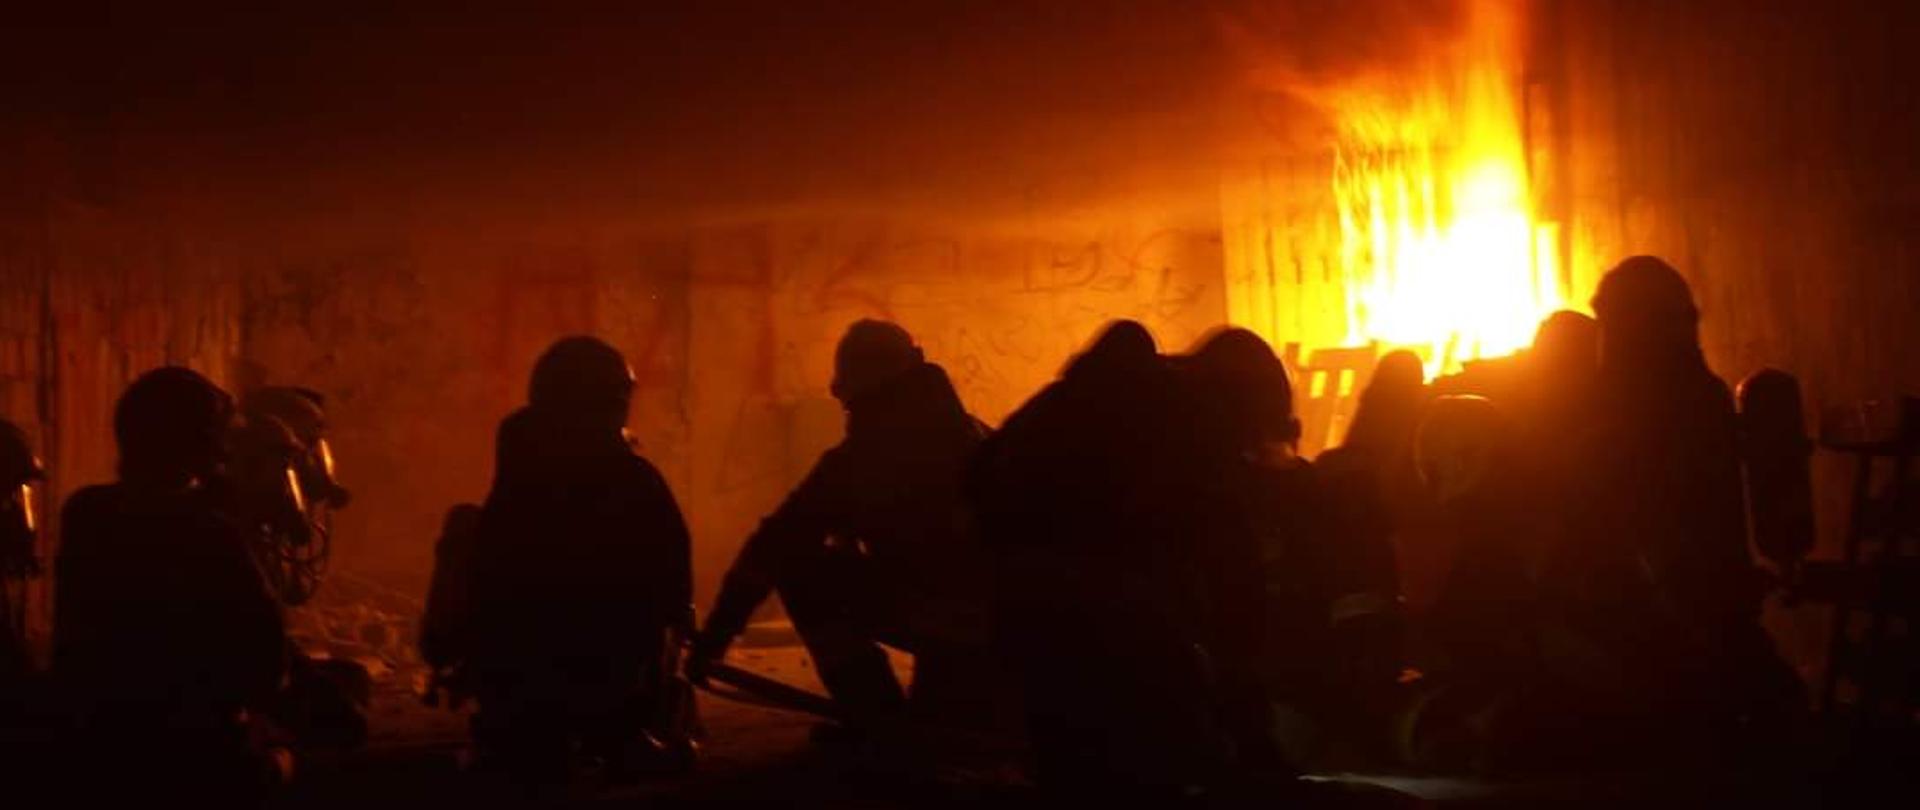 Zdjęcia przedstawia strażaków ubranych w ubranie specjalne znajdujących się pomieszczeniu w którym jest pożar oraz silne zadymienie.